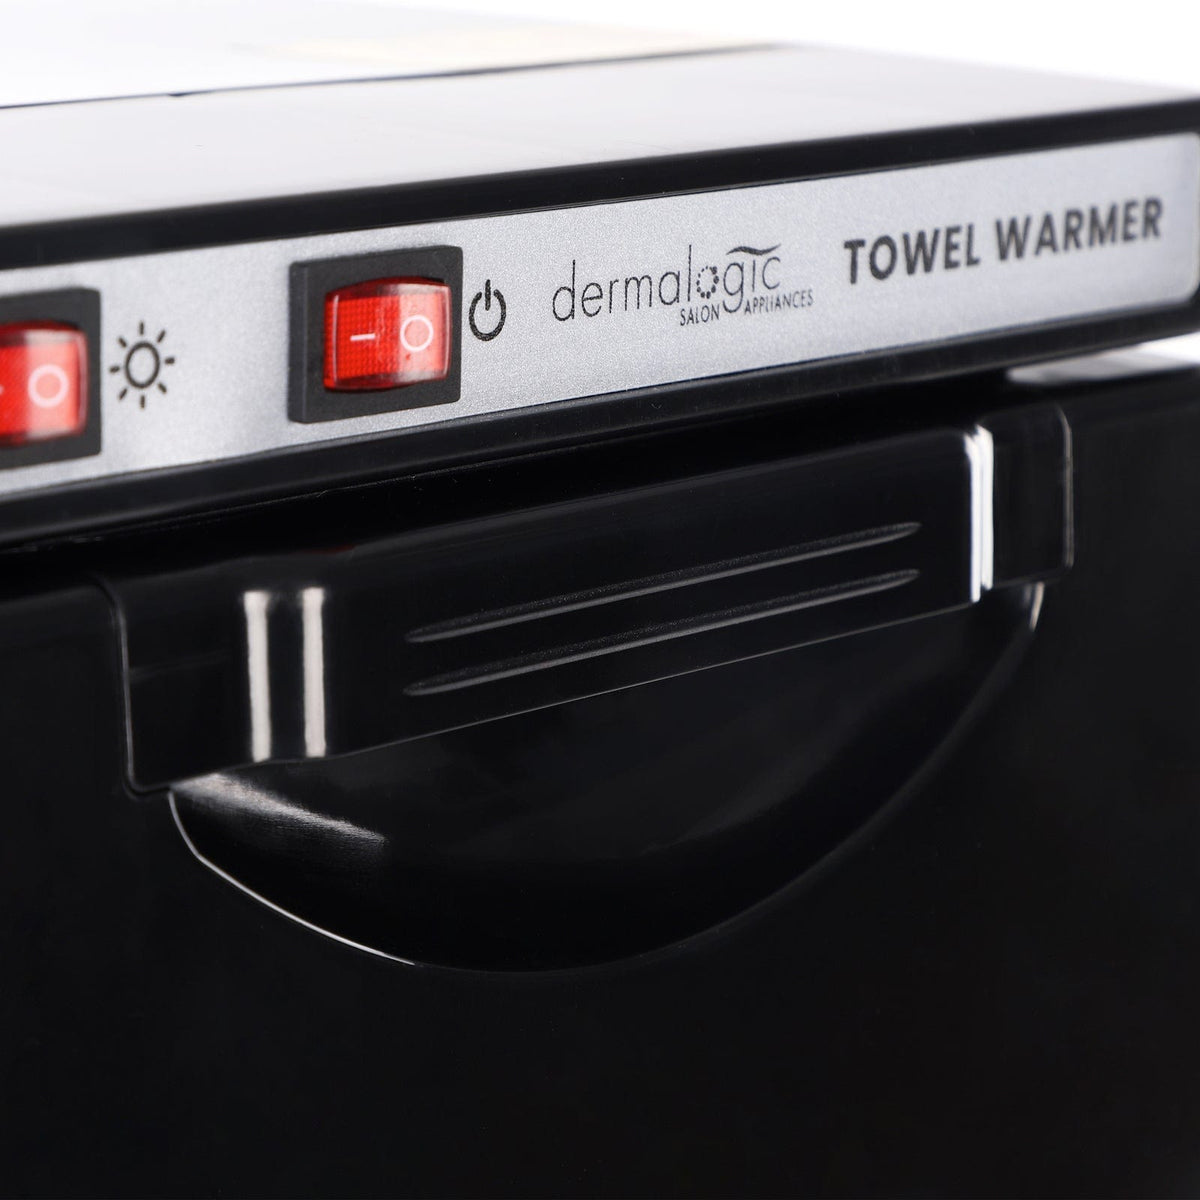 Dermalogic Mini UV Towel Warmer 5L